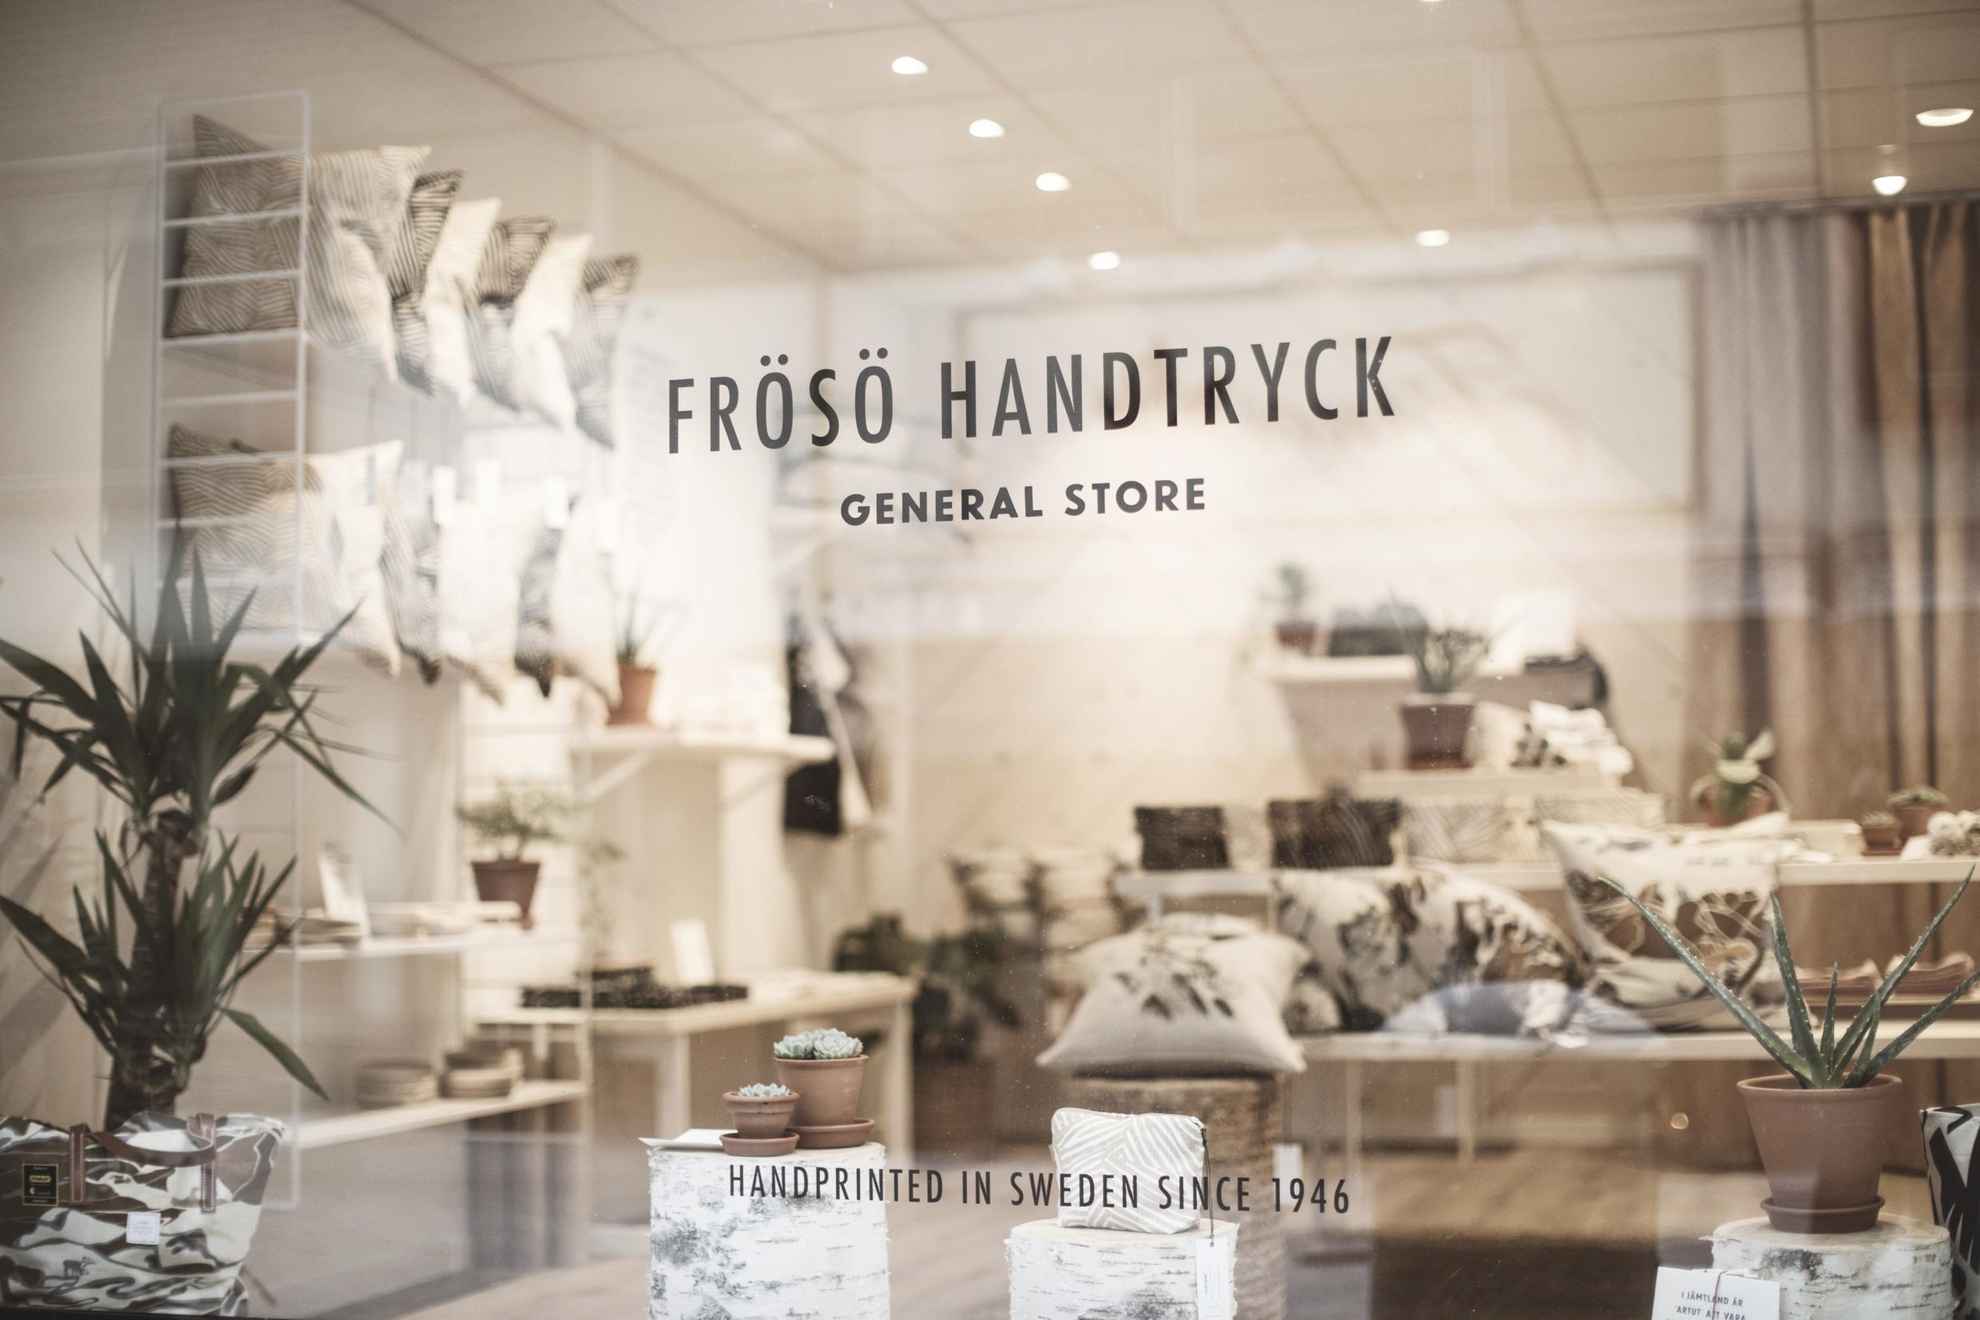 Vue sur un magasin de design d'intérieur depuis la vitrine. Il y a des textiles et des oreillers. Un logo collé sur la fenêtre indique Frösö Handtryck.